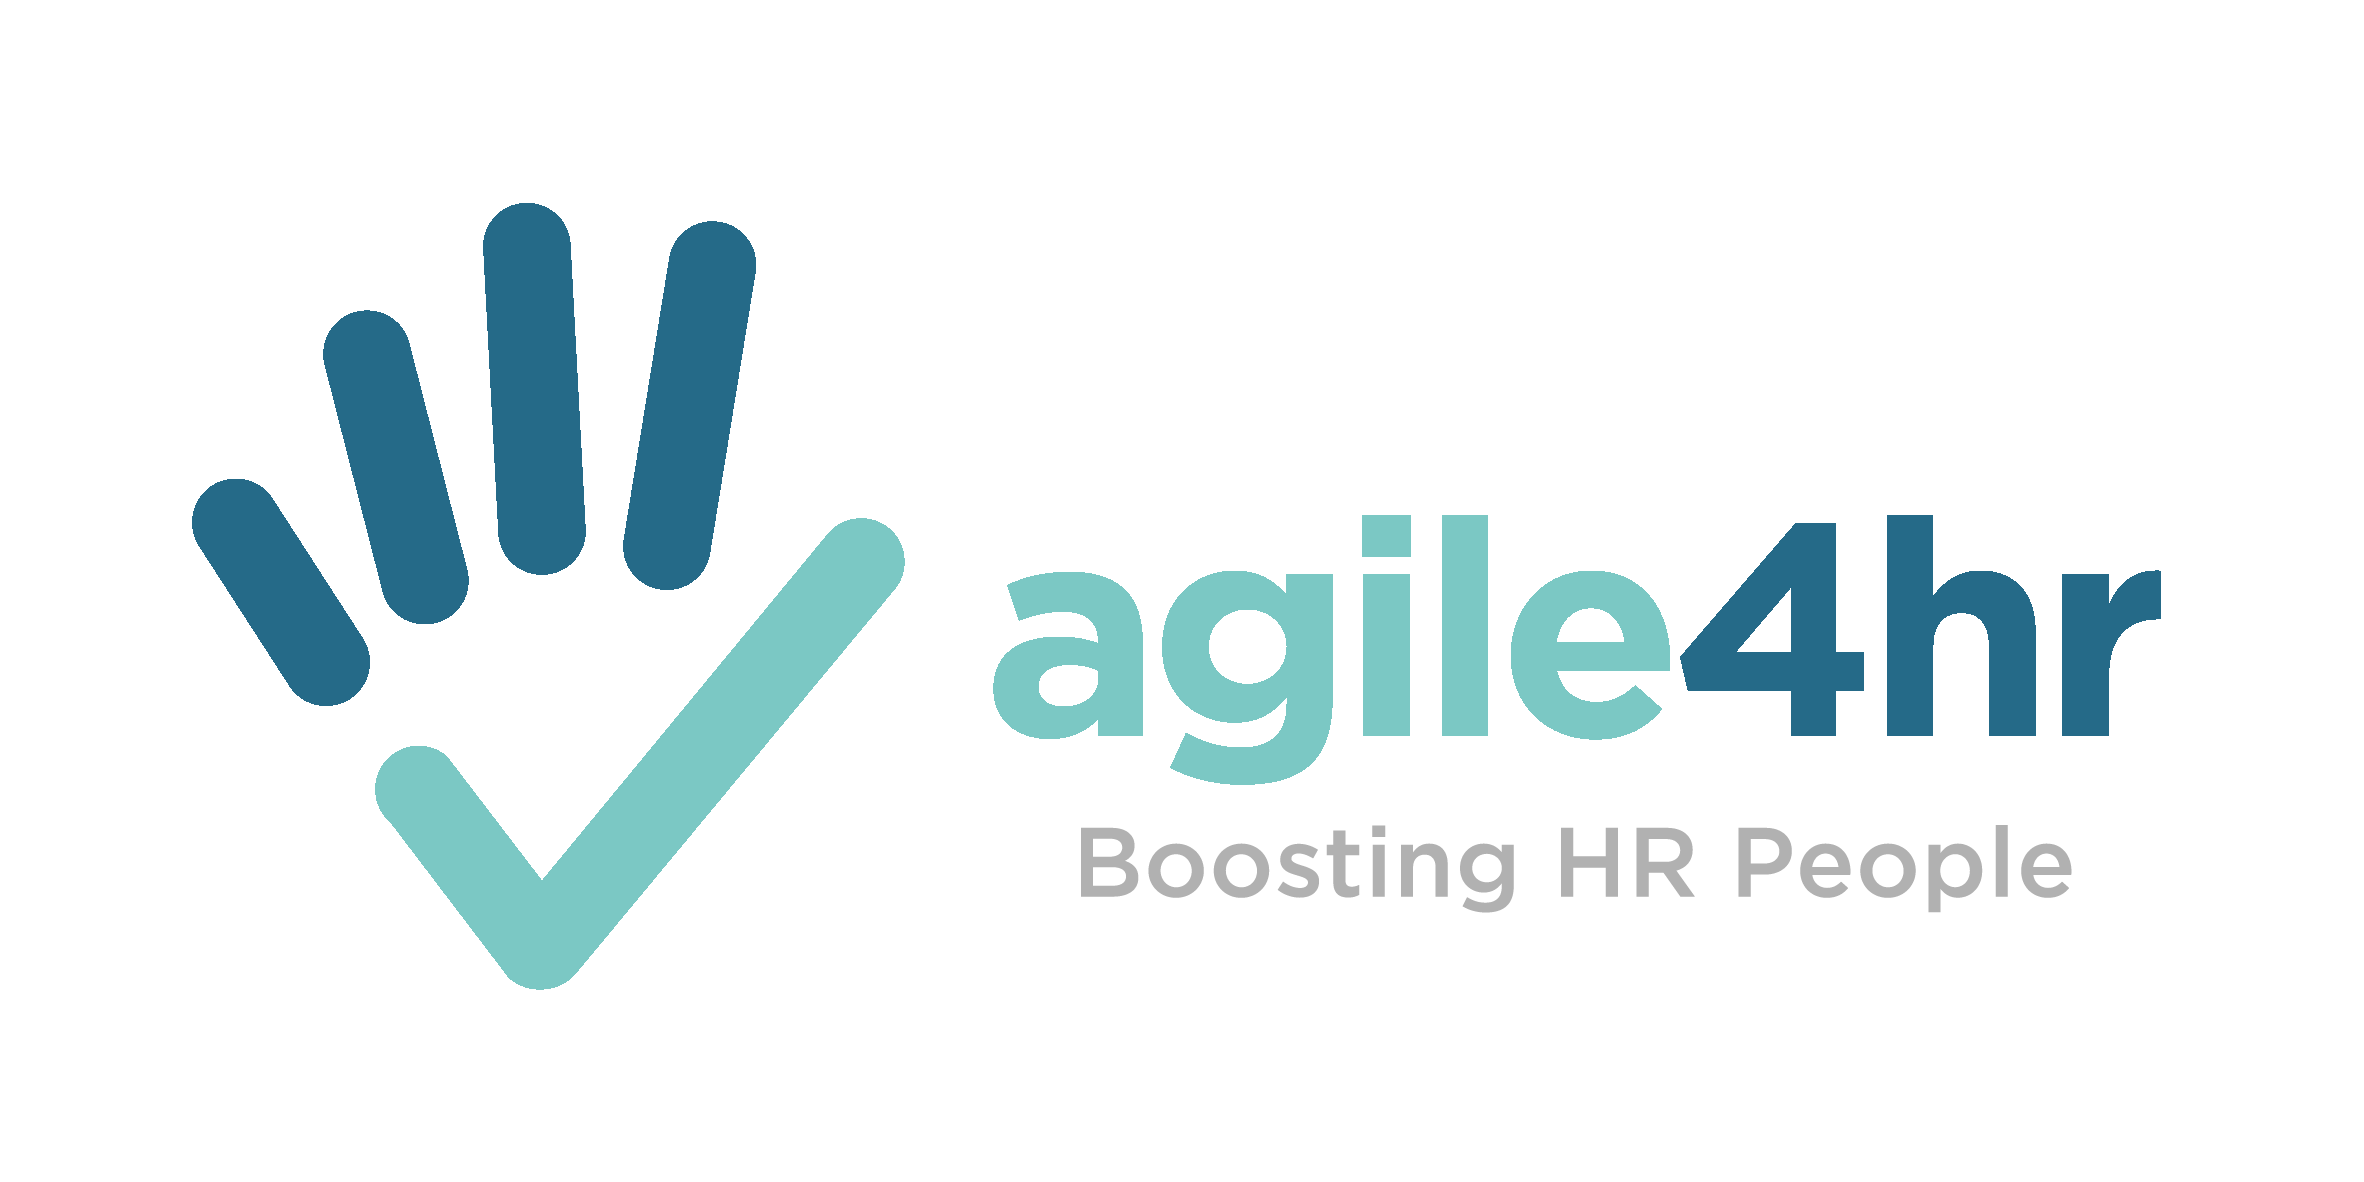 agile4hr - Boosting HR People